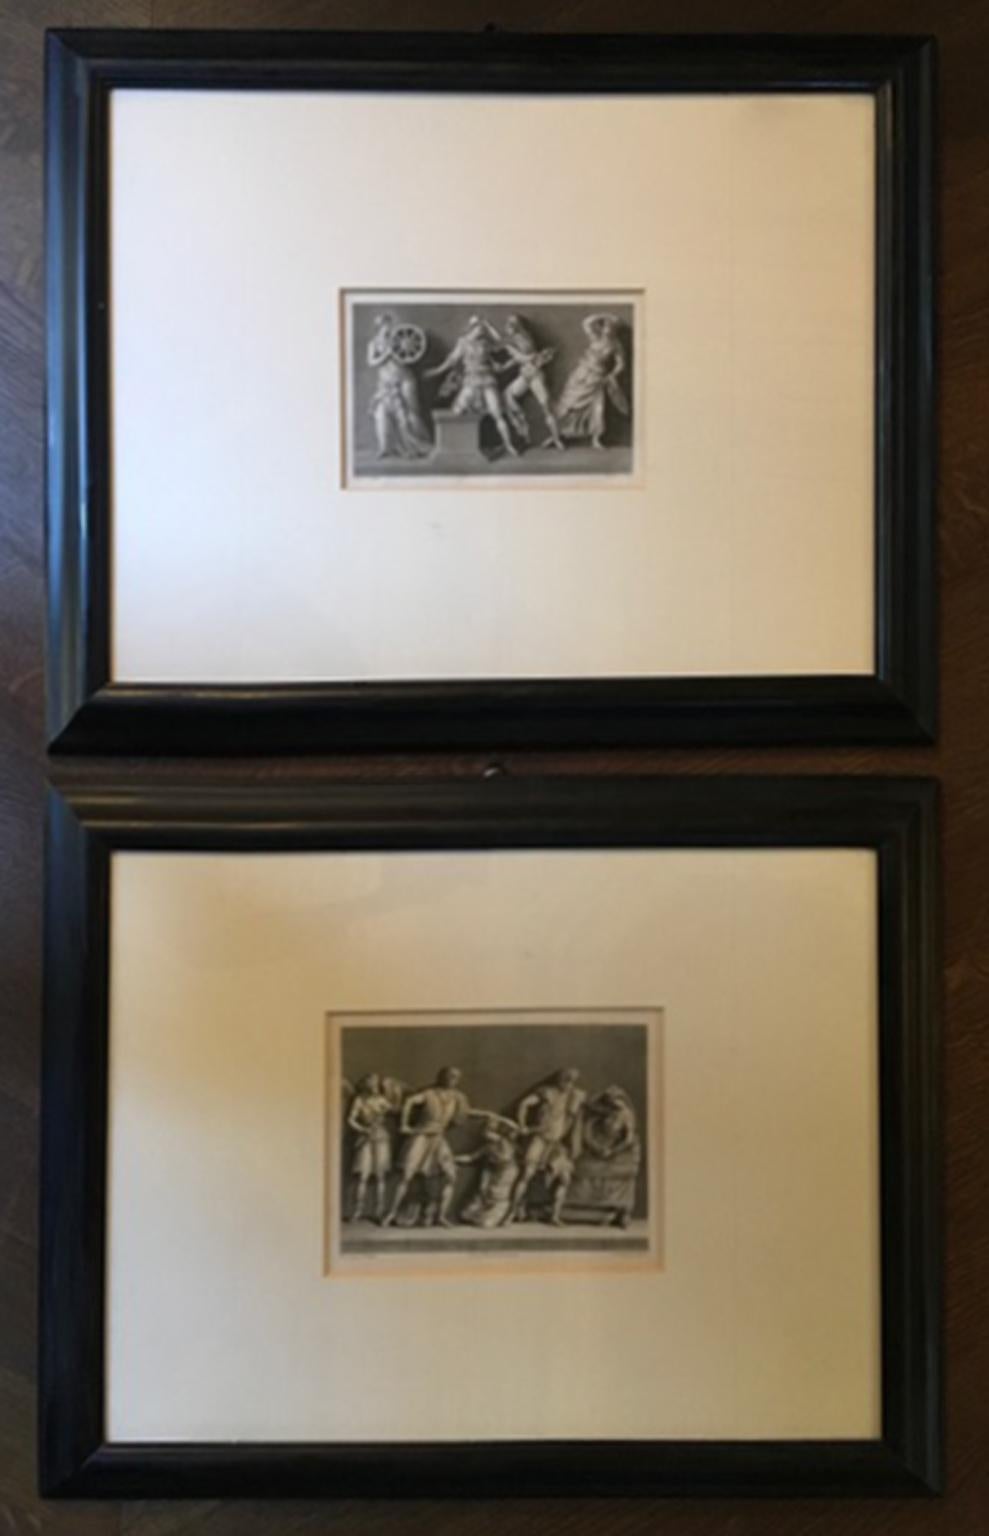 Frankreich Mitte des 19. Jahrhunderts Zwei neoklassizistische Schwarz-Weiß-Drucke auf Papier von J.C.Ulmer

Dieses schöne Paar antiker Papierdrucke wurde von dem Franzosen J.C.Ulmer gestochen.
Das neoklassizistische Thema ist von zeitloser Eleganz.